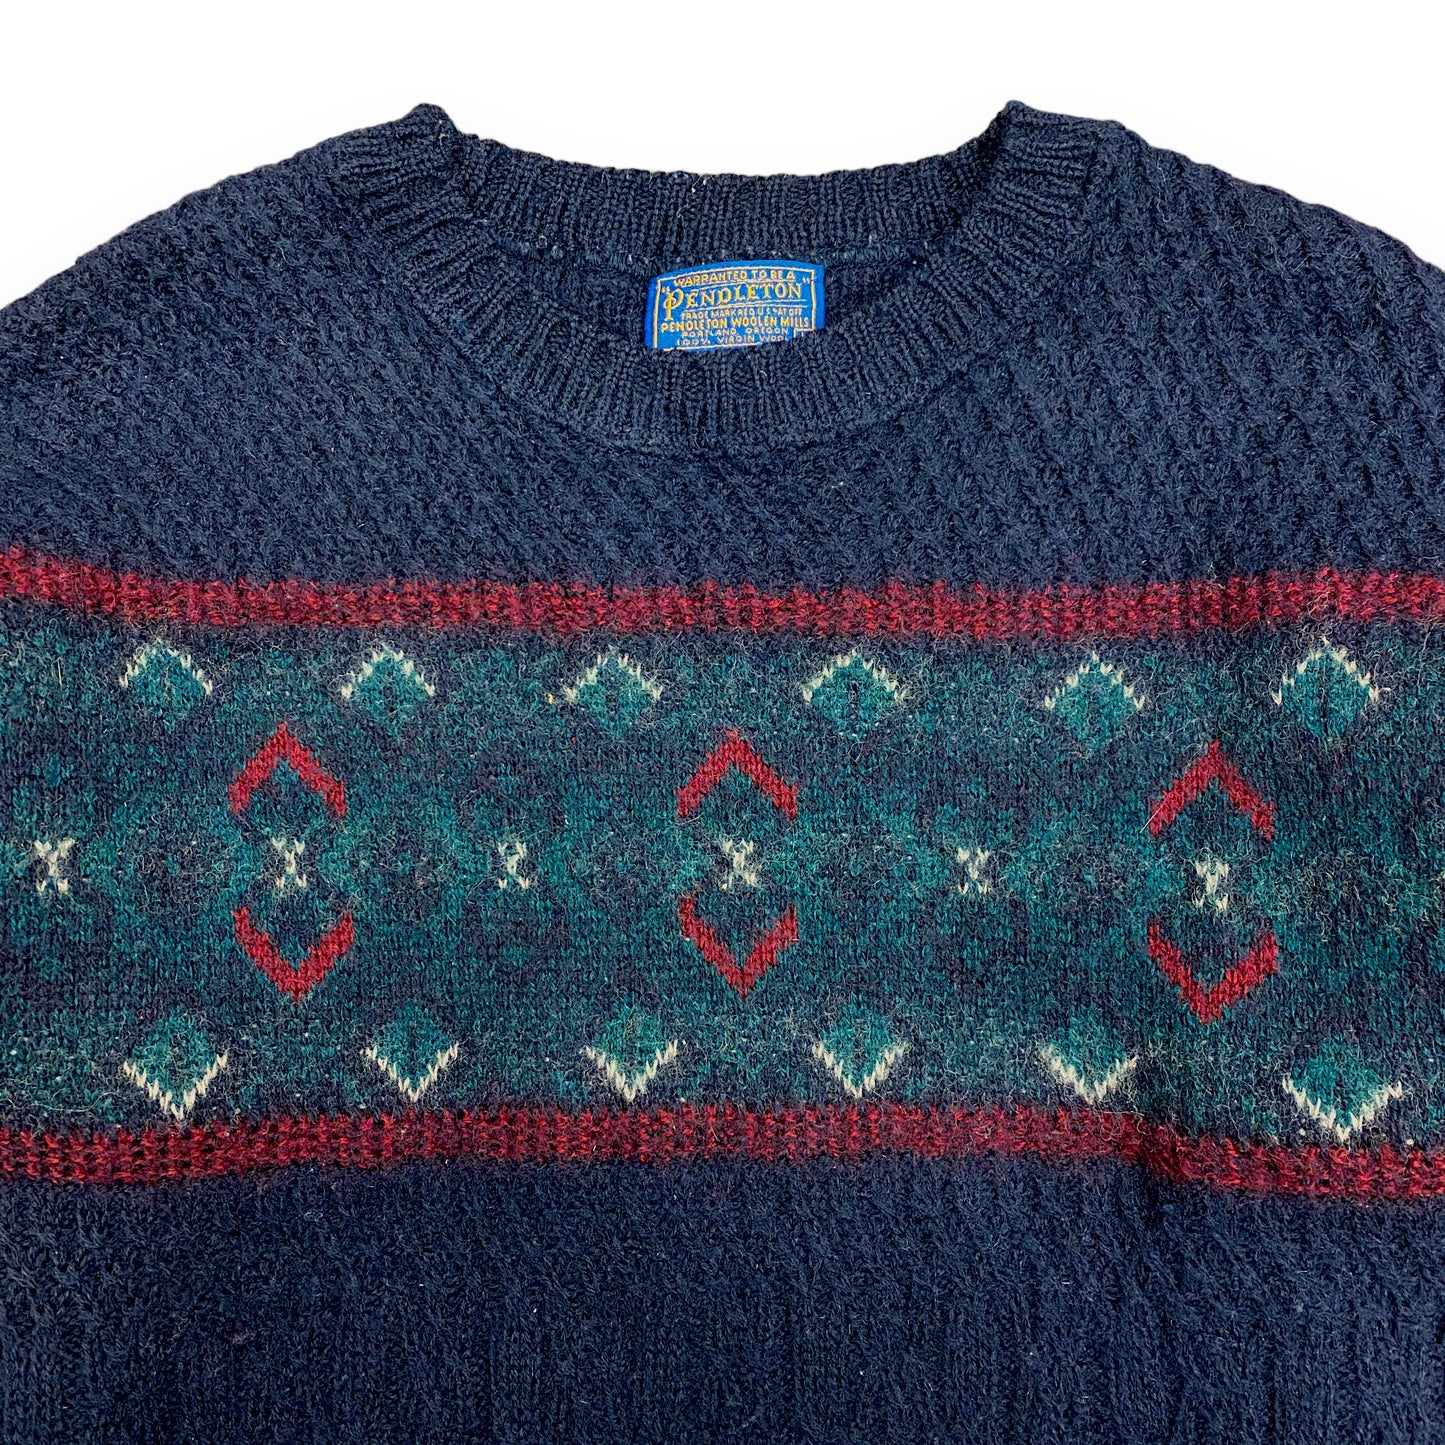 Vintage 1970s Pendleton Wool Ski Sweater - Size Large